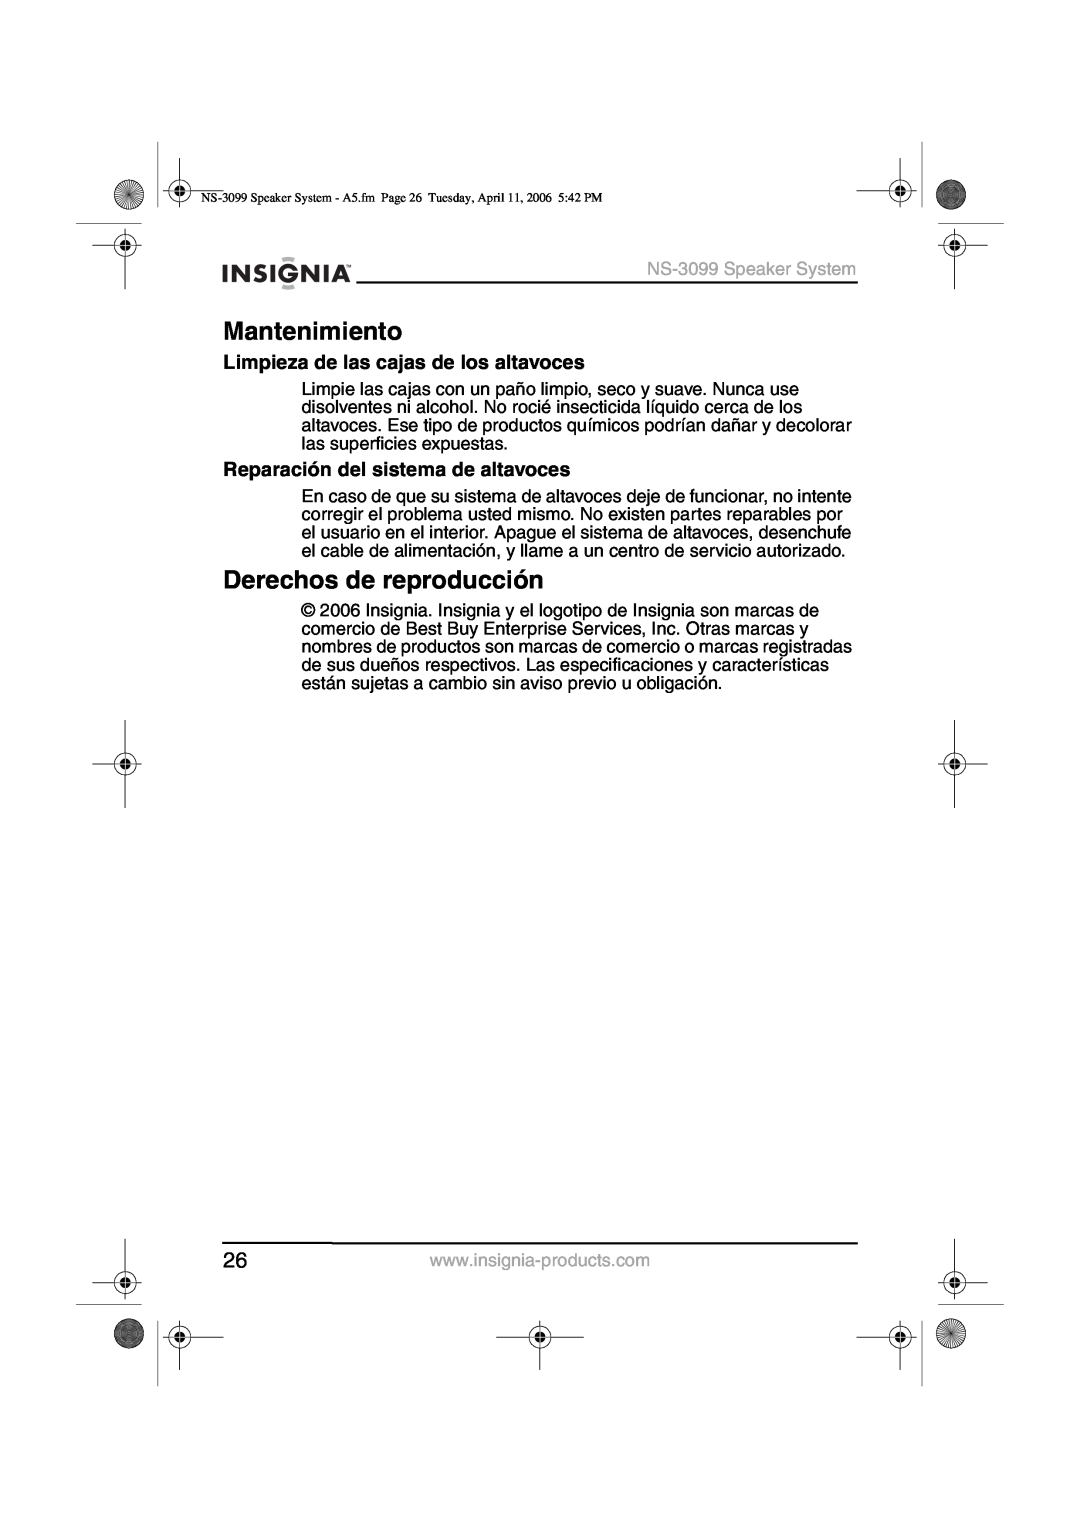 Insignia manual Mantenimiento, Derechos de reproducción, Limpieza de las cajas de los altavoces, NS-3099Speaker System 